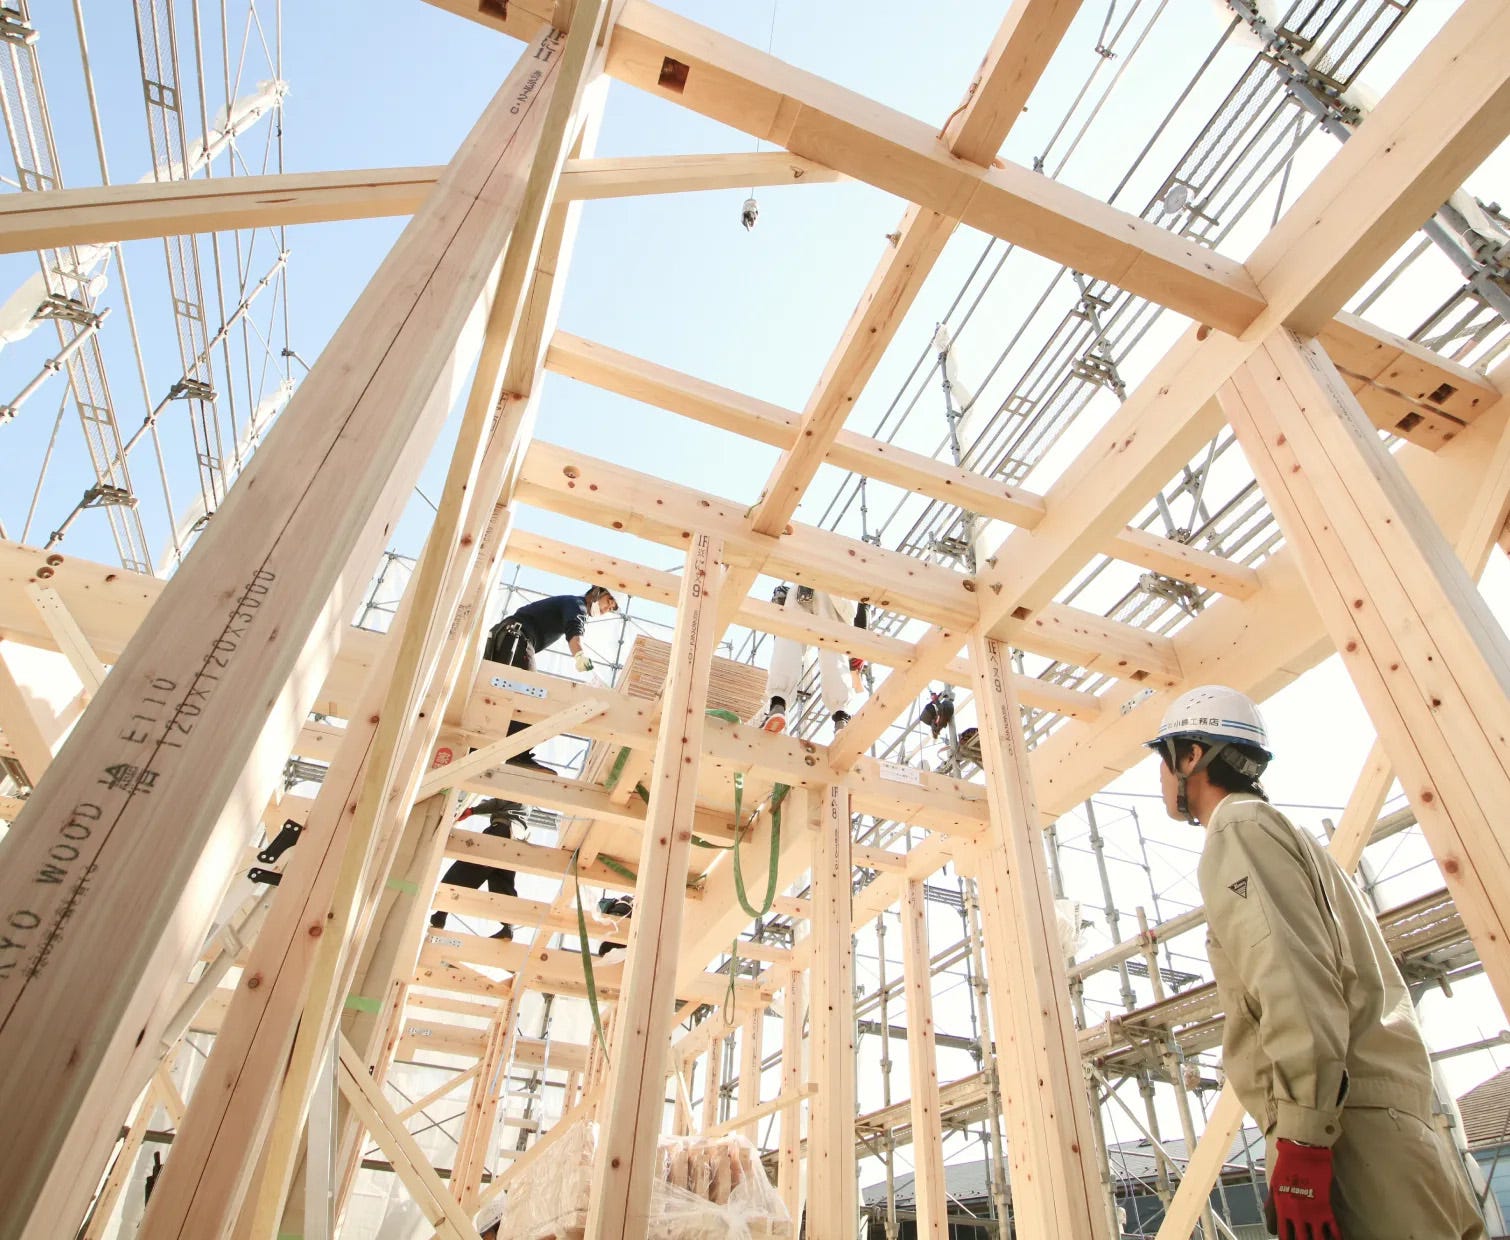 小嶋工務店は「TOKYO WOOD」という高品質な木材を使用しています。耐久性があり、地震に対する強度が高い特性を持っています。
また、最新の耐震設計基準に基づいているため、住宅寿命を延ばすための工法を採用しています。

1.TOKYO WOOD
2.耐震等級 最高ランク3
3.シロアリ対策